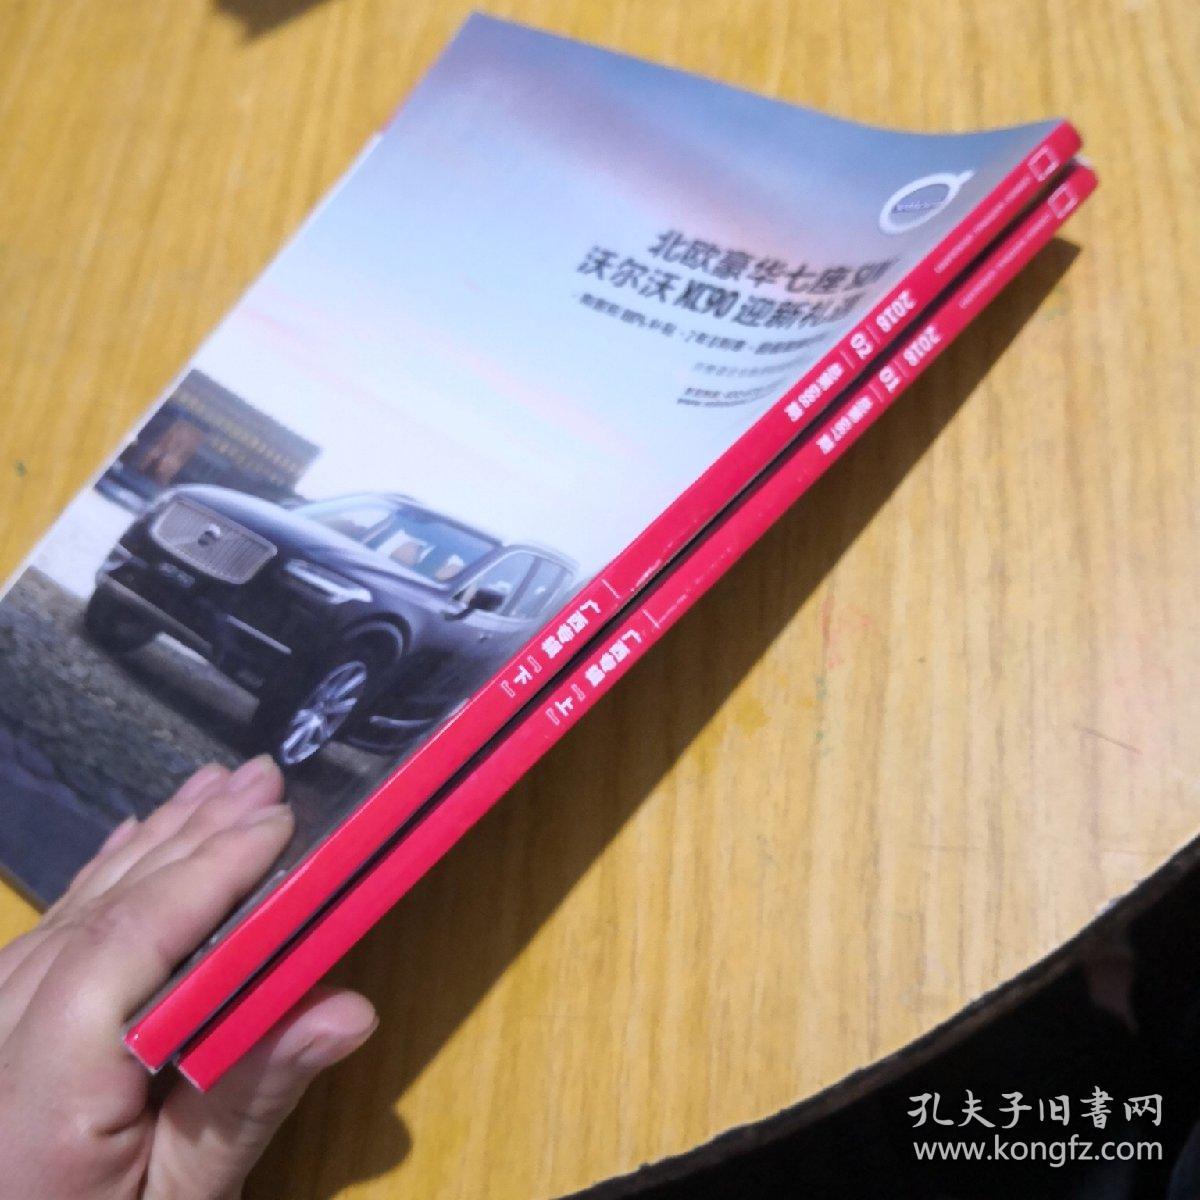 中国国家地理广西专辑上下两册合售